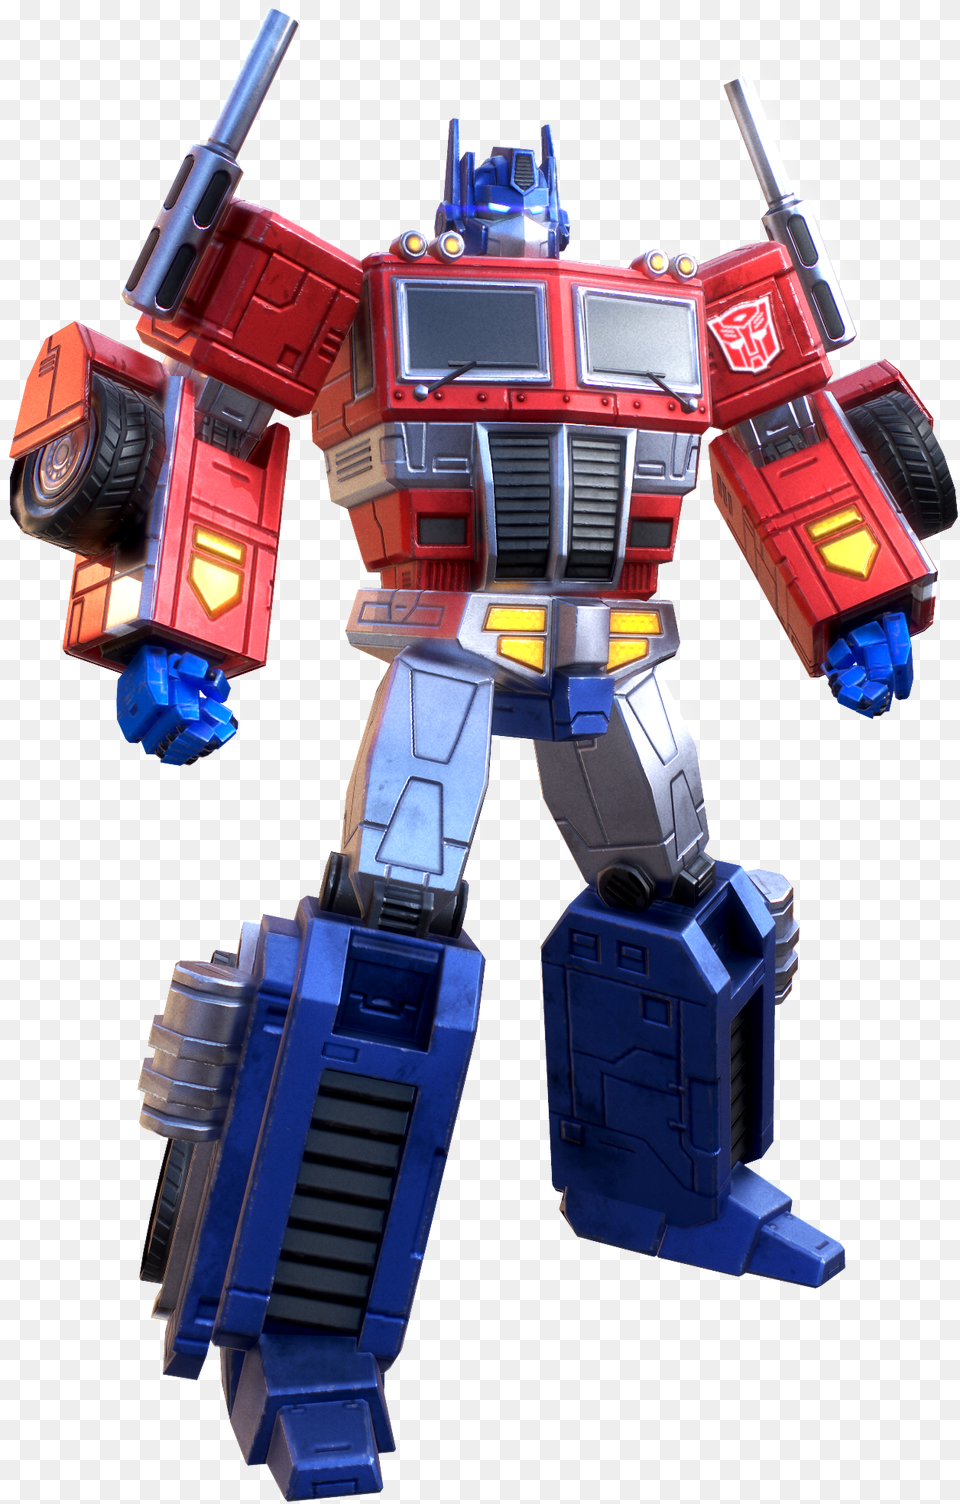 Optimus Hero, Robot, Toy, Machine, Wheel Png Image